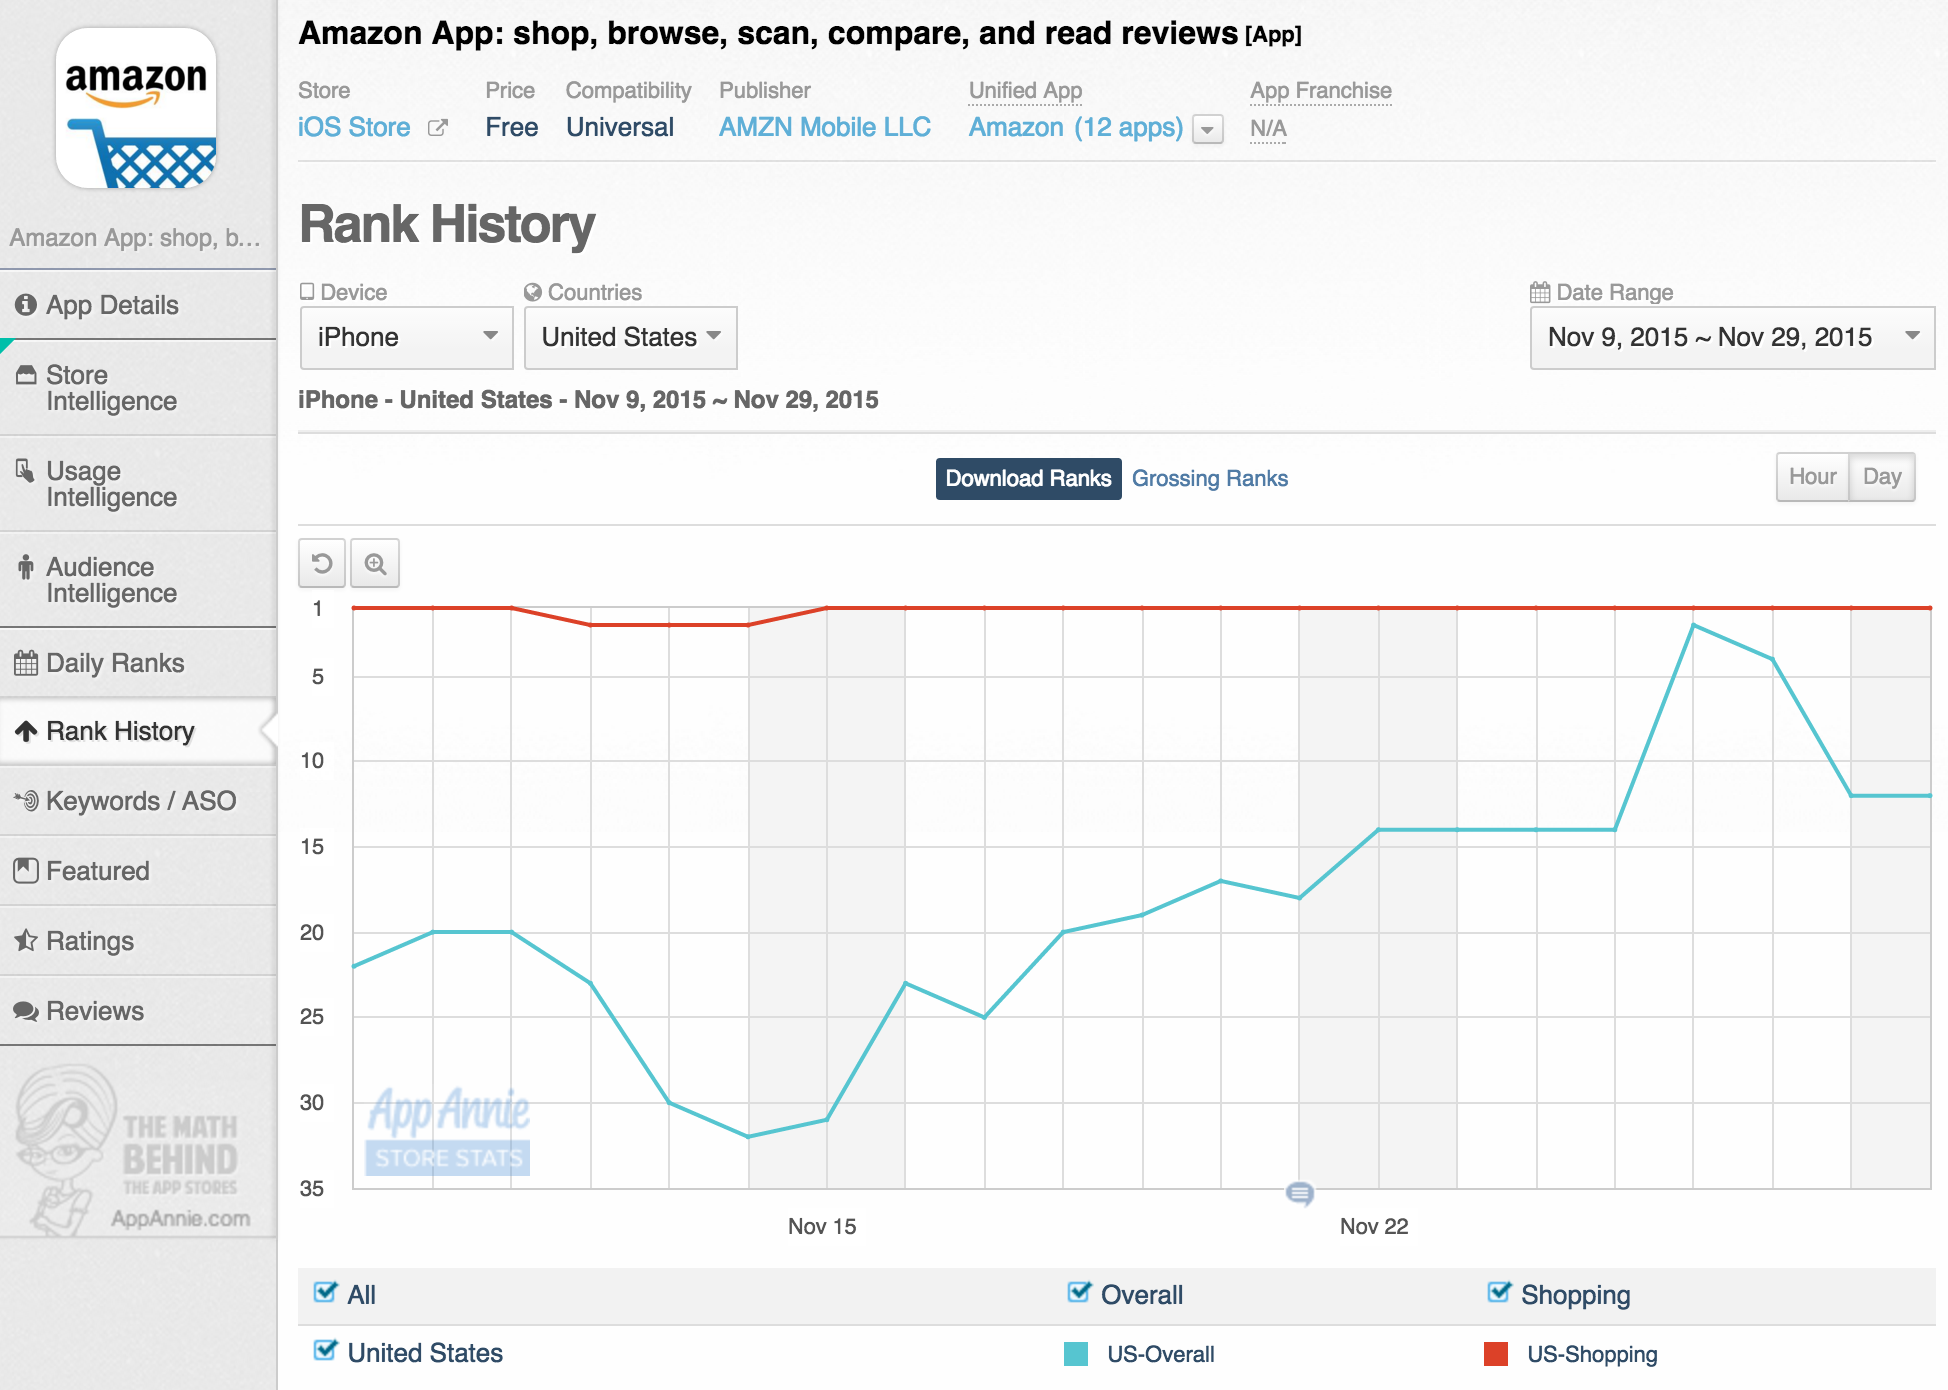 Amazon November 2015 Rank History